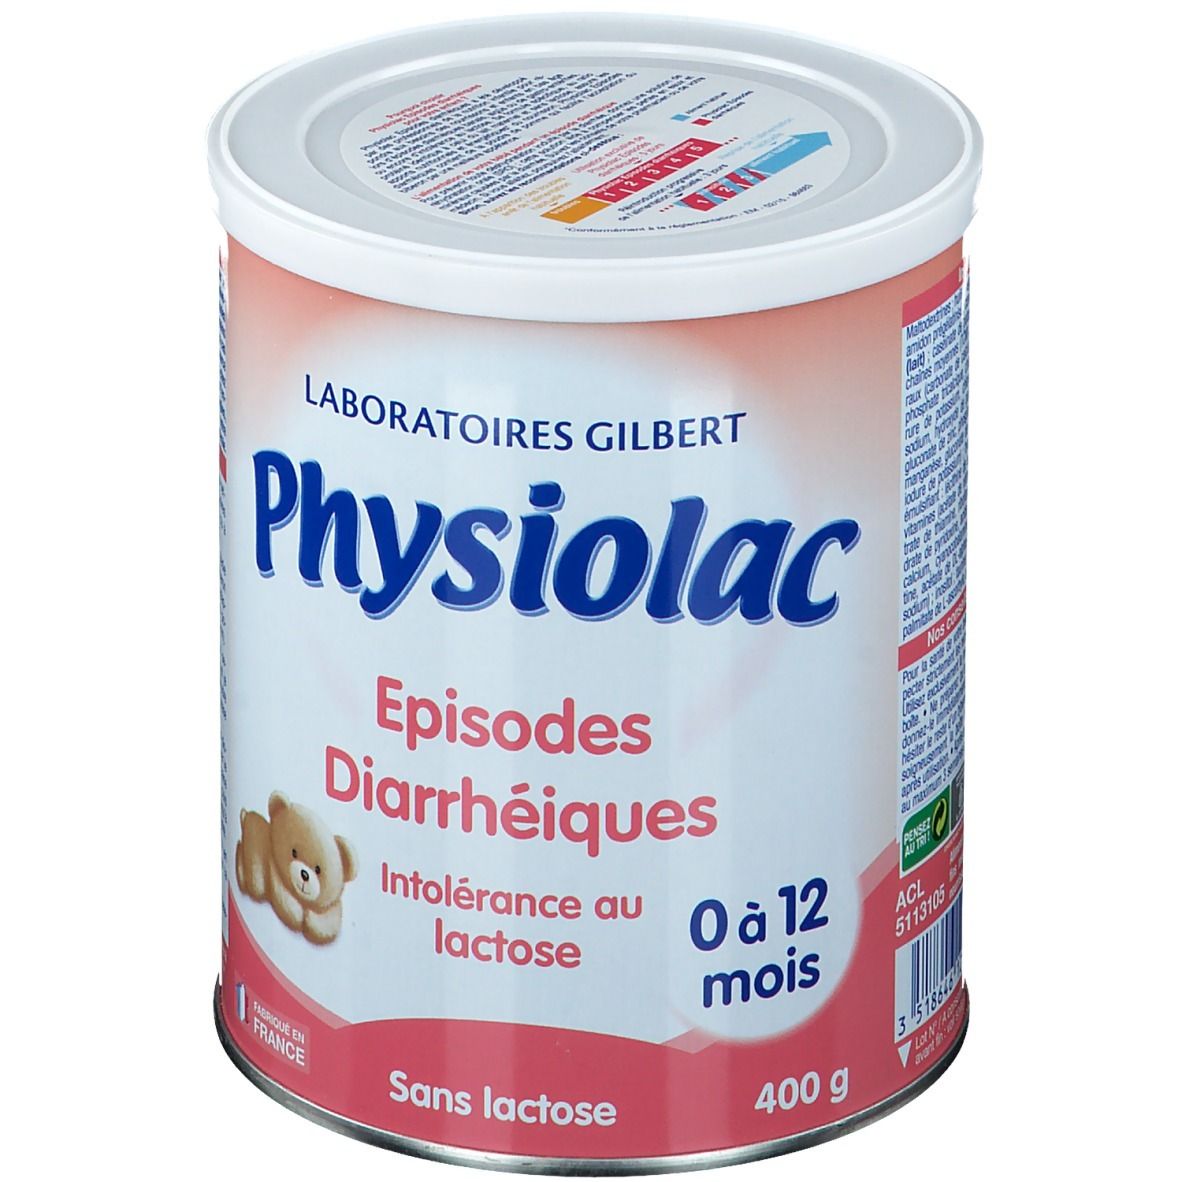 Physiolac Episodes Diarrhéiques 0-12 mois